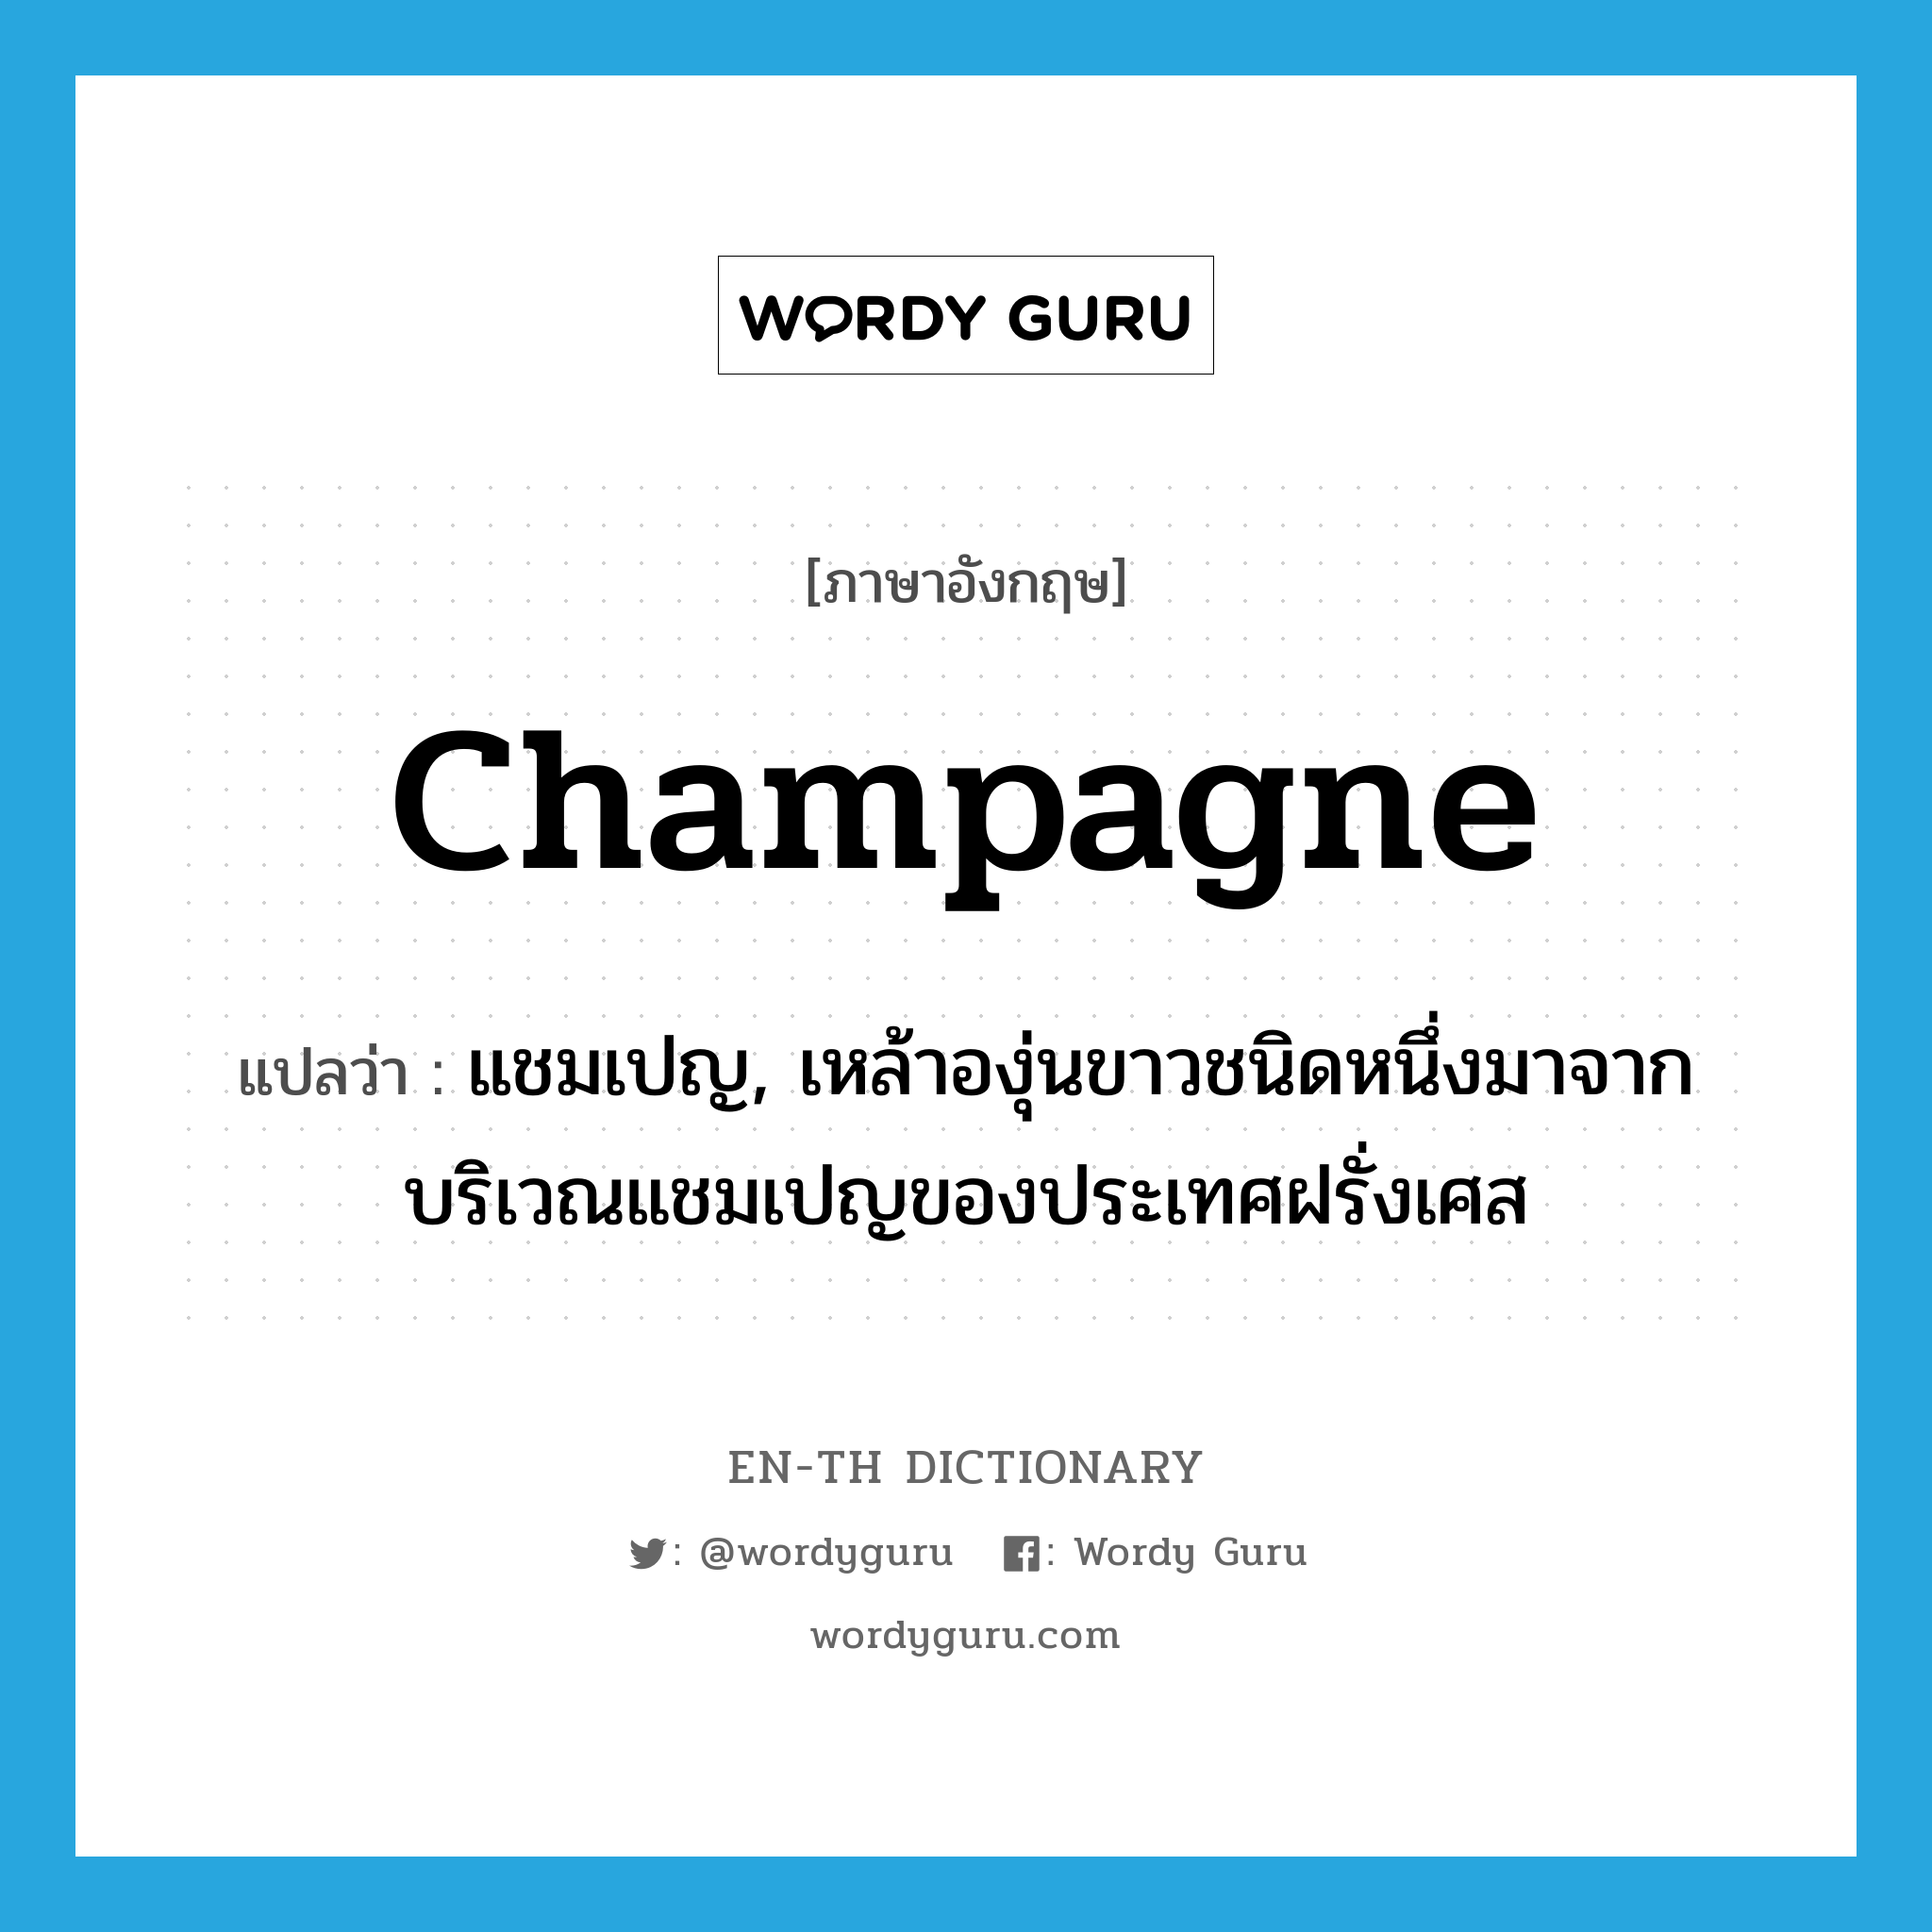 champagne แปลว่า?, คำศัพท์ภาษาอังกฤษ champagne แปลว่า แชมเปญ, เหล้าองุ่นขาวชนิดหนึ่งมาจากบริเวณแชมเปญของประเทศฝรั่งเศส ประเภท N หมวด N